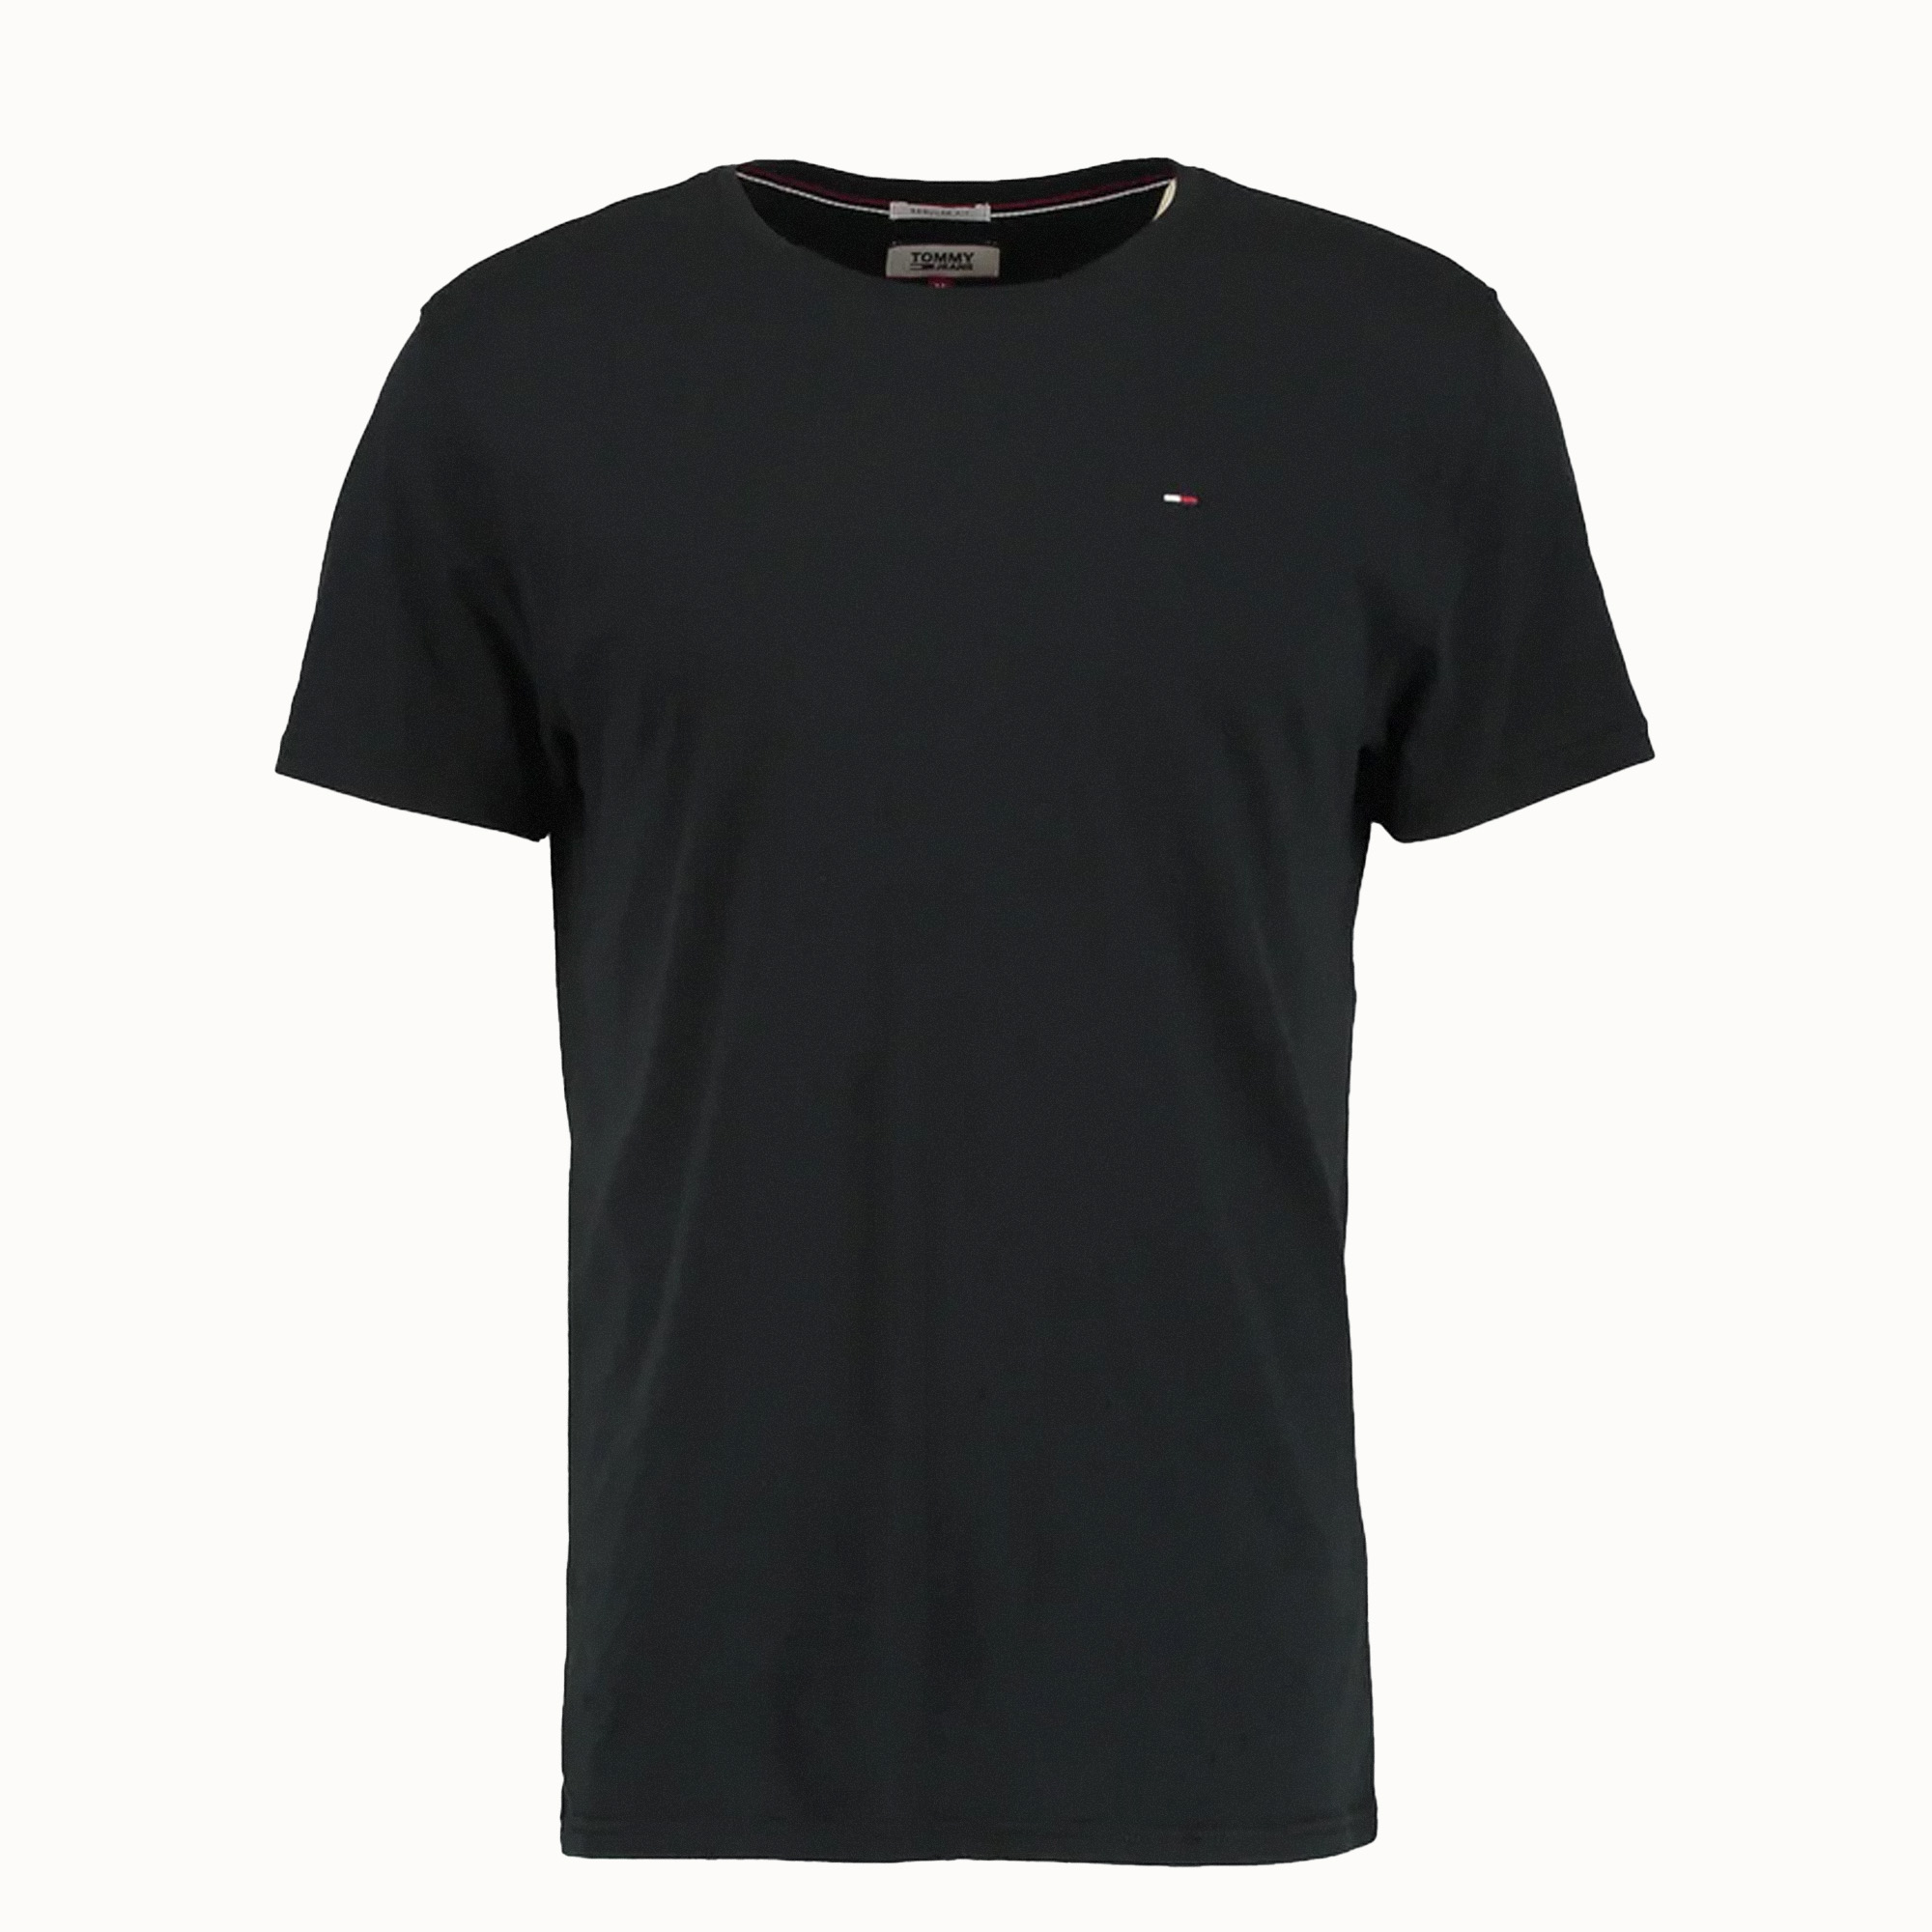 نکته خرید - قیمت روز تی شرت آستین کوتاه مردانه تامی هیلفیگر مدل 772 خرید